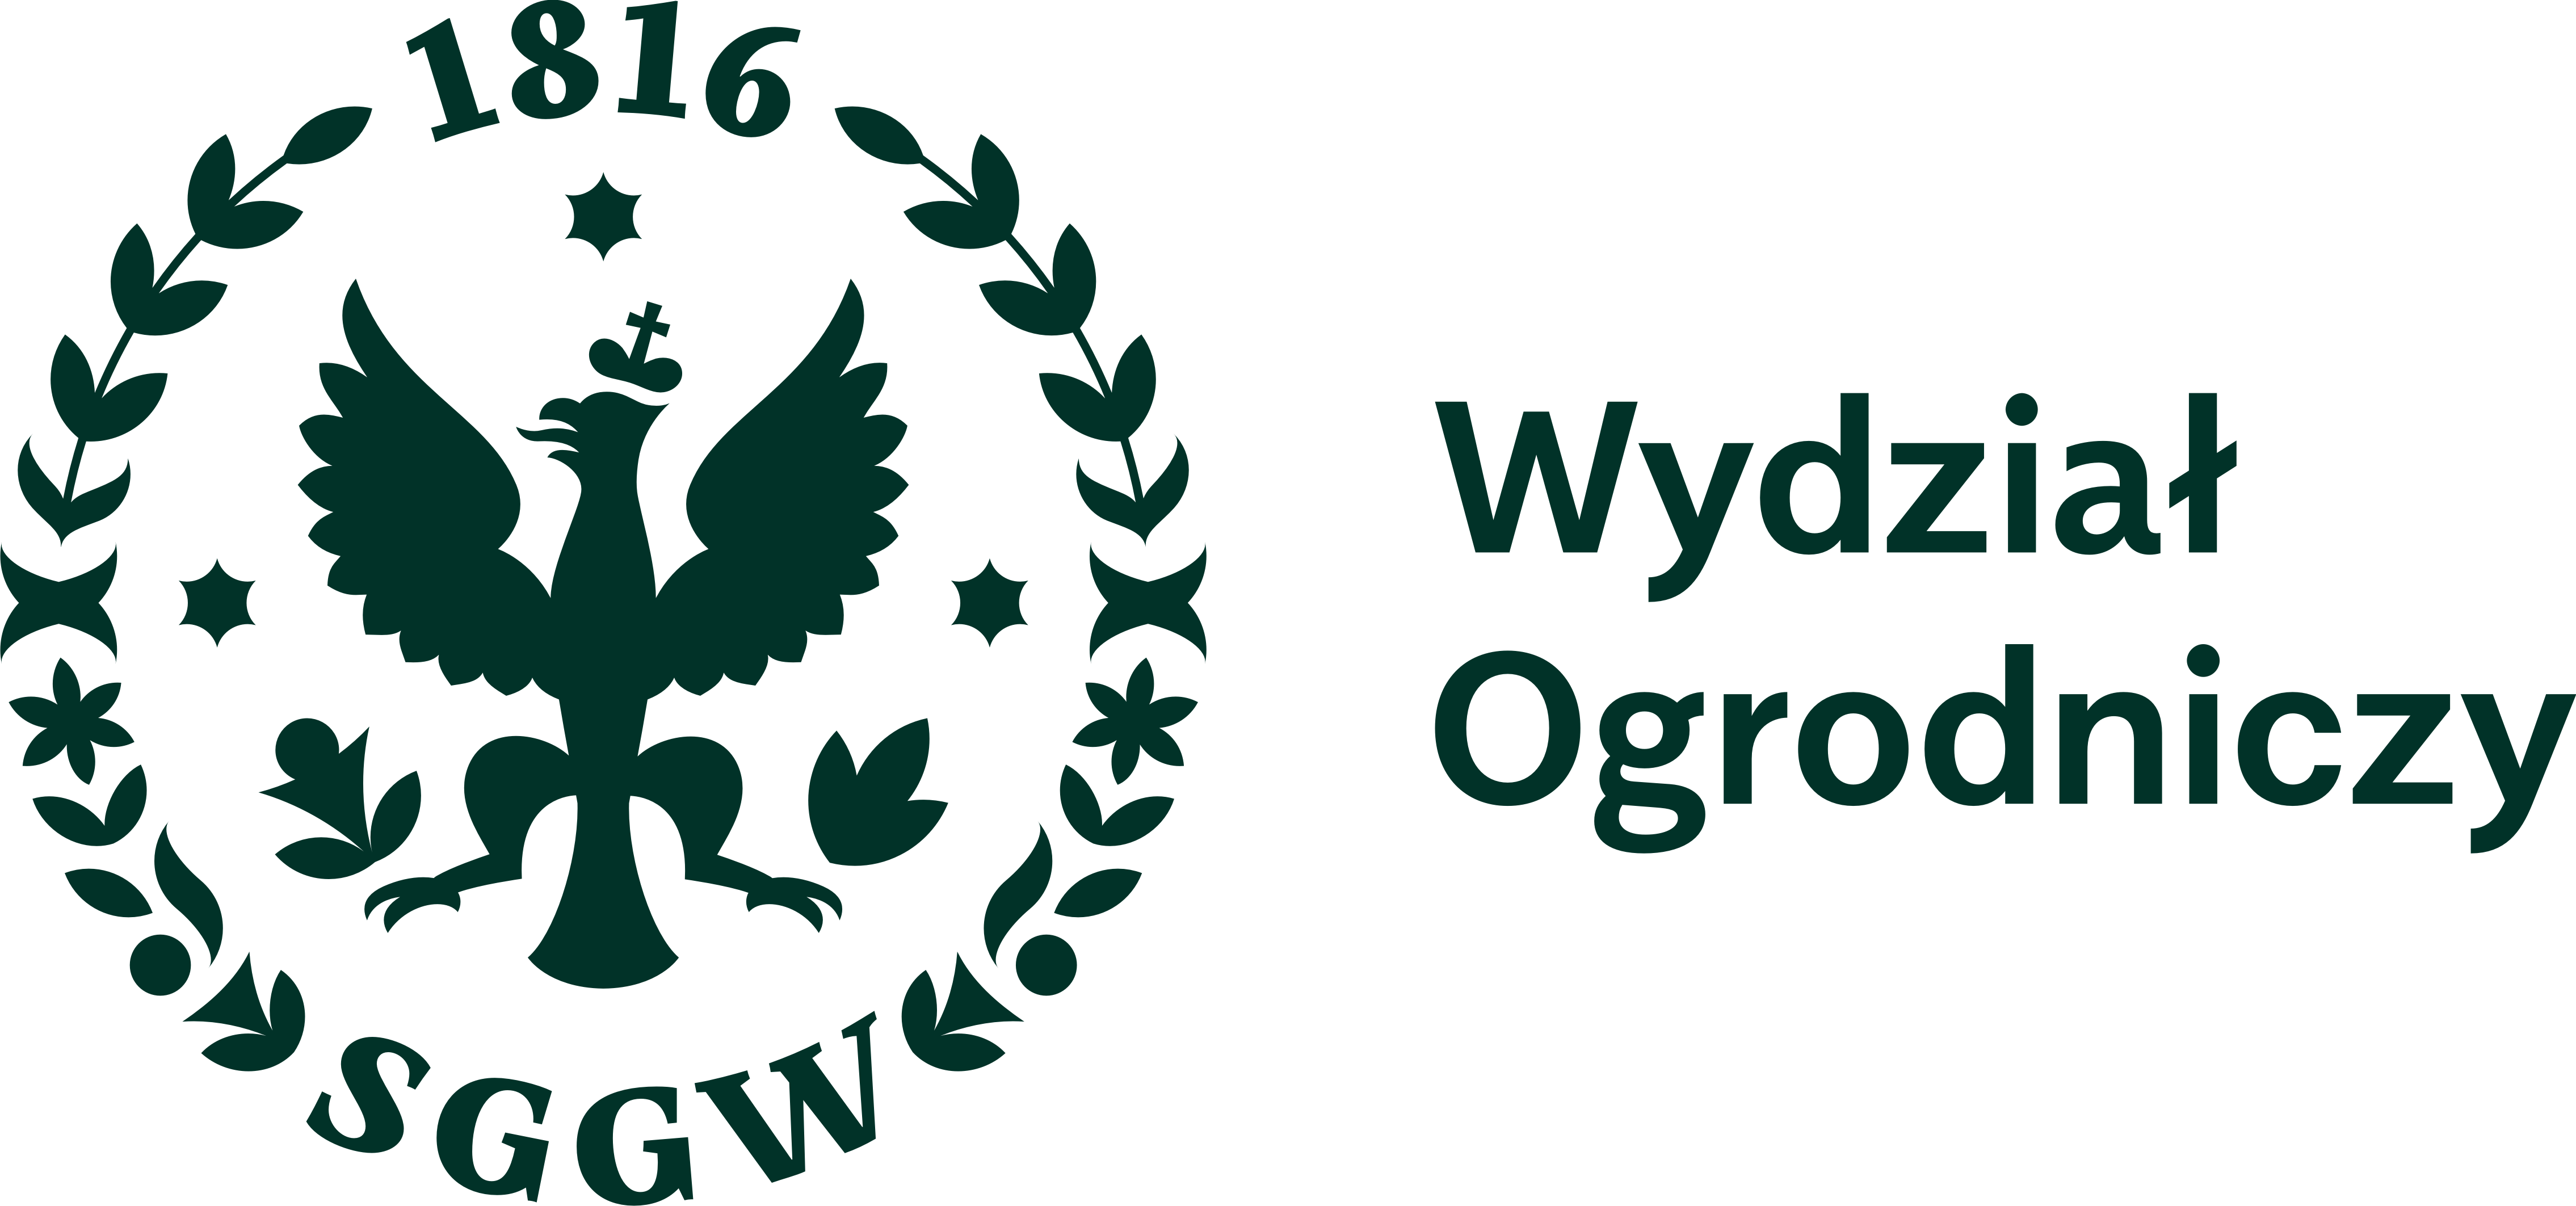 Wydział Ogrodniczy - logo